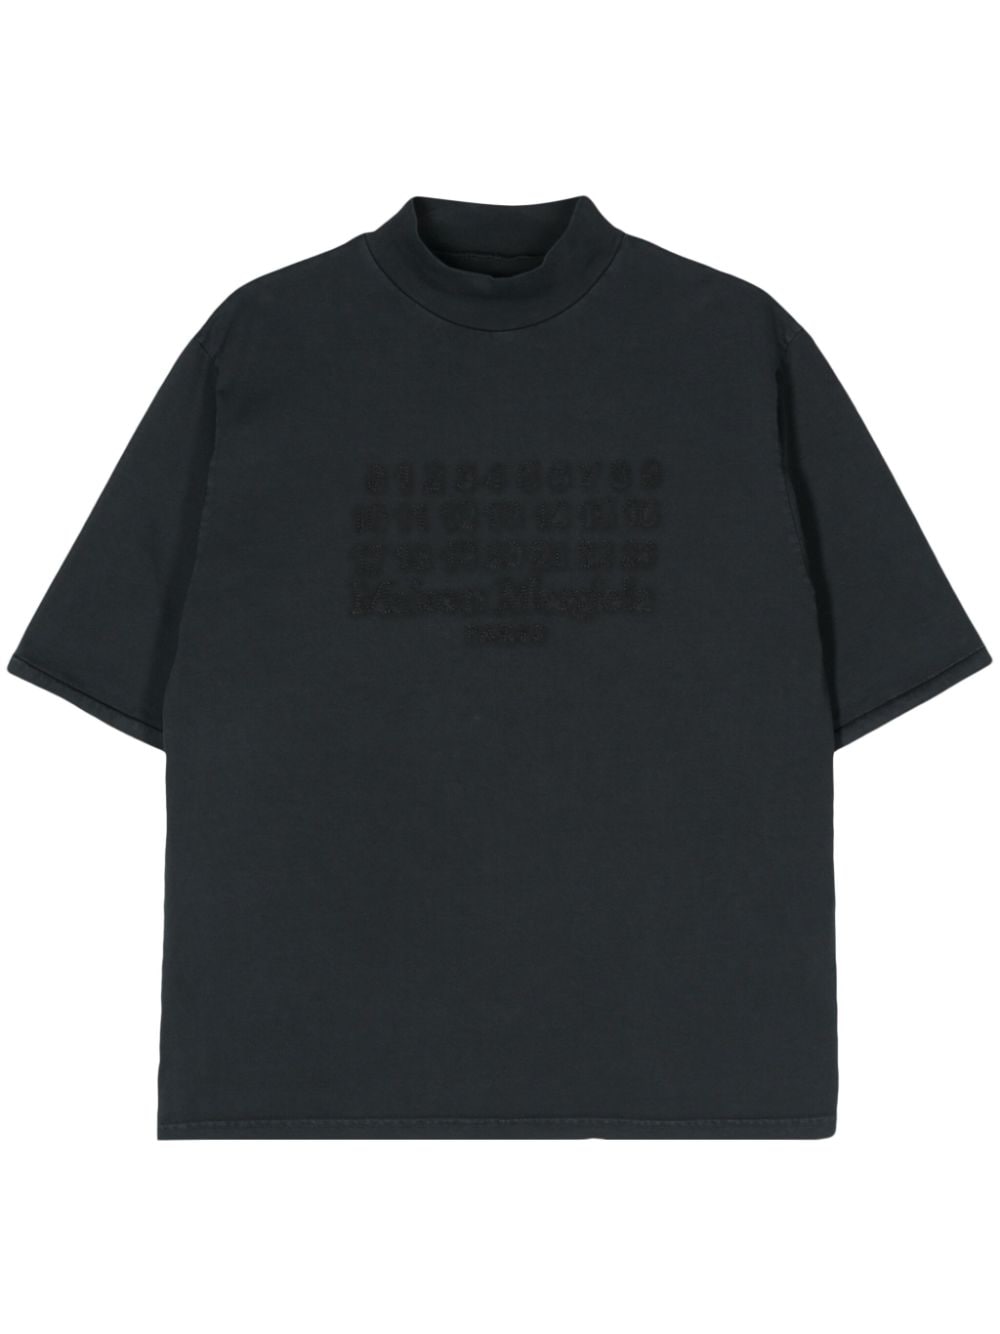 T-shirt in cotone con ricamo numeri<br><br><br>